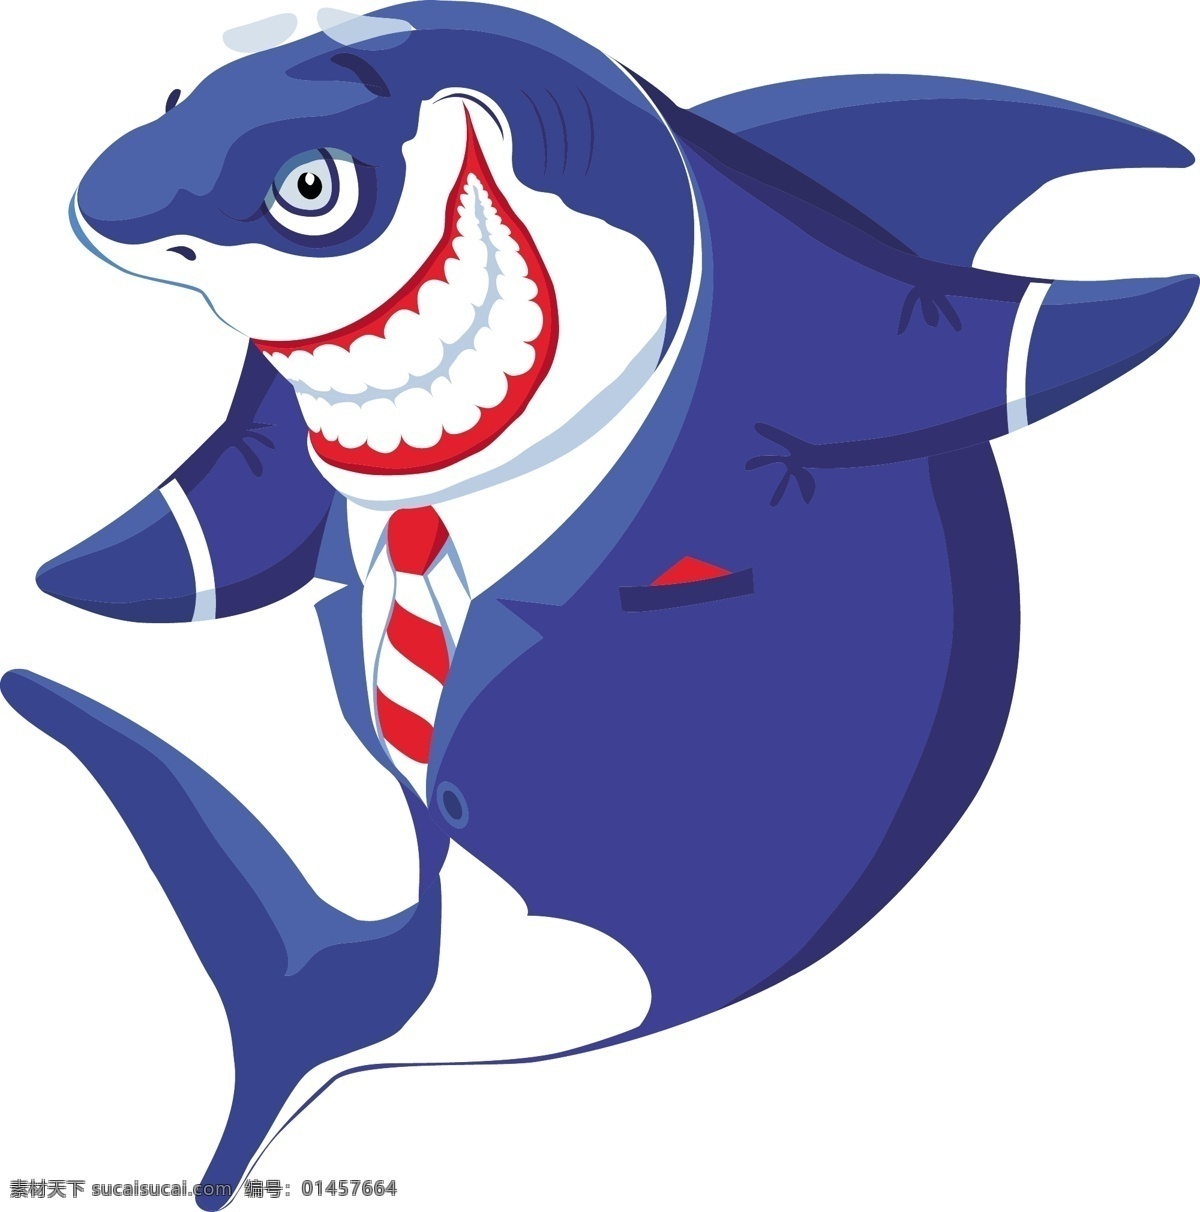 卡通鲨鱼 矢量 西装 boss 鲨鱼 冷血 凶狠 残酷 虎鲨 西服 卡通 动画 拟人 蓝色 海洋 海洋生物 生物世界